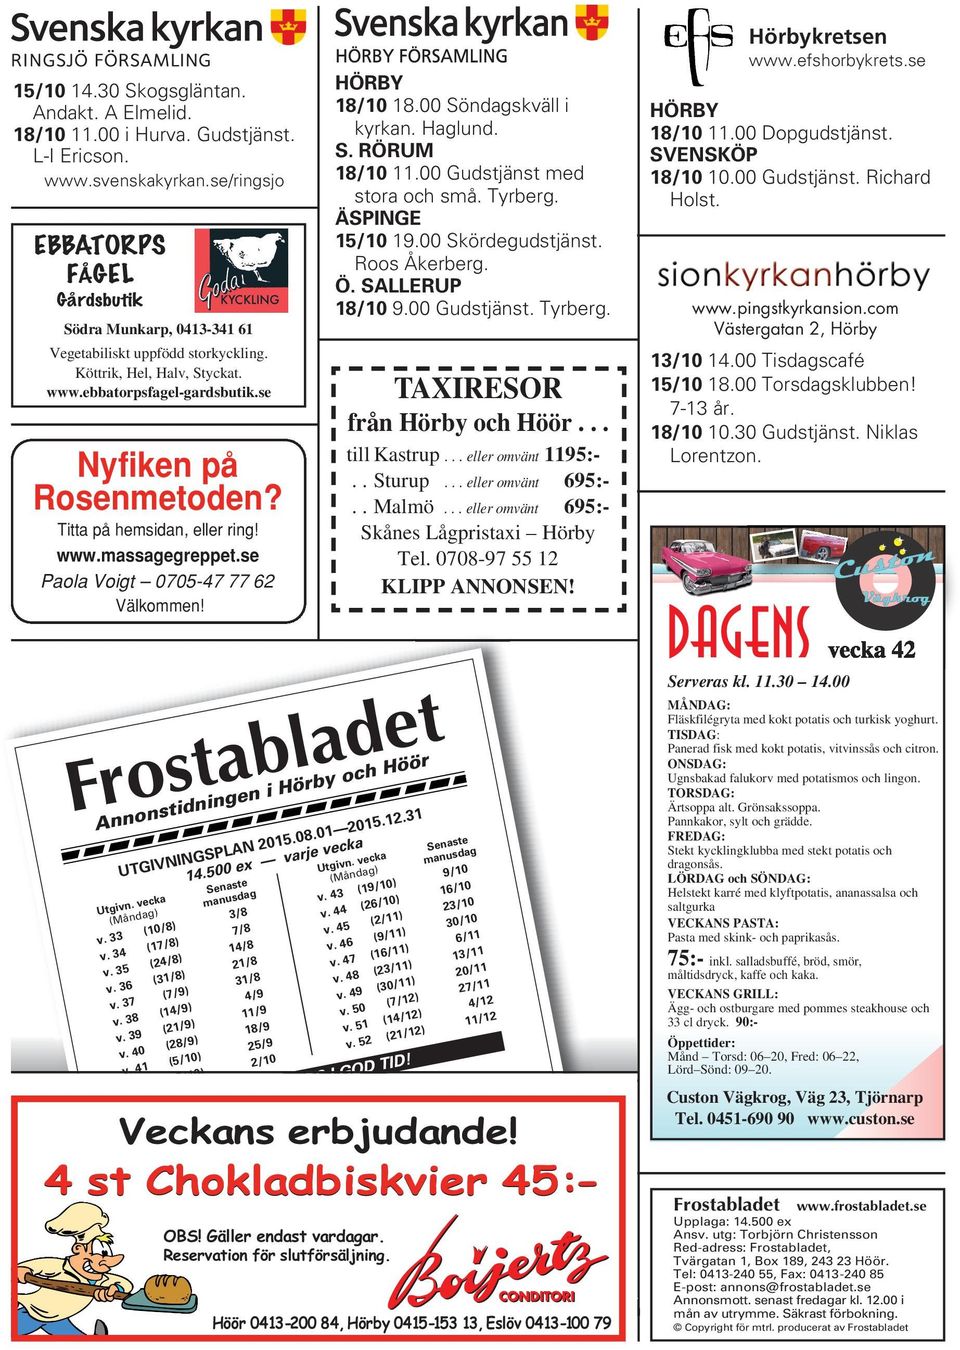 Titta på hemsidan, eller ring! www.massagegreppet.se Paola Voigt 0705-47 77 62 Välkommen! Frostabladet Annonstidningen i Hörby och Höör UTGIVNINGSPLAN2015.08.01 2015.12.31 14.500ex varje vecka Utgivn.